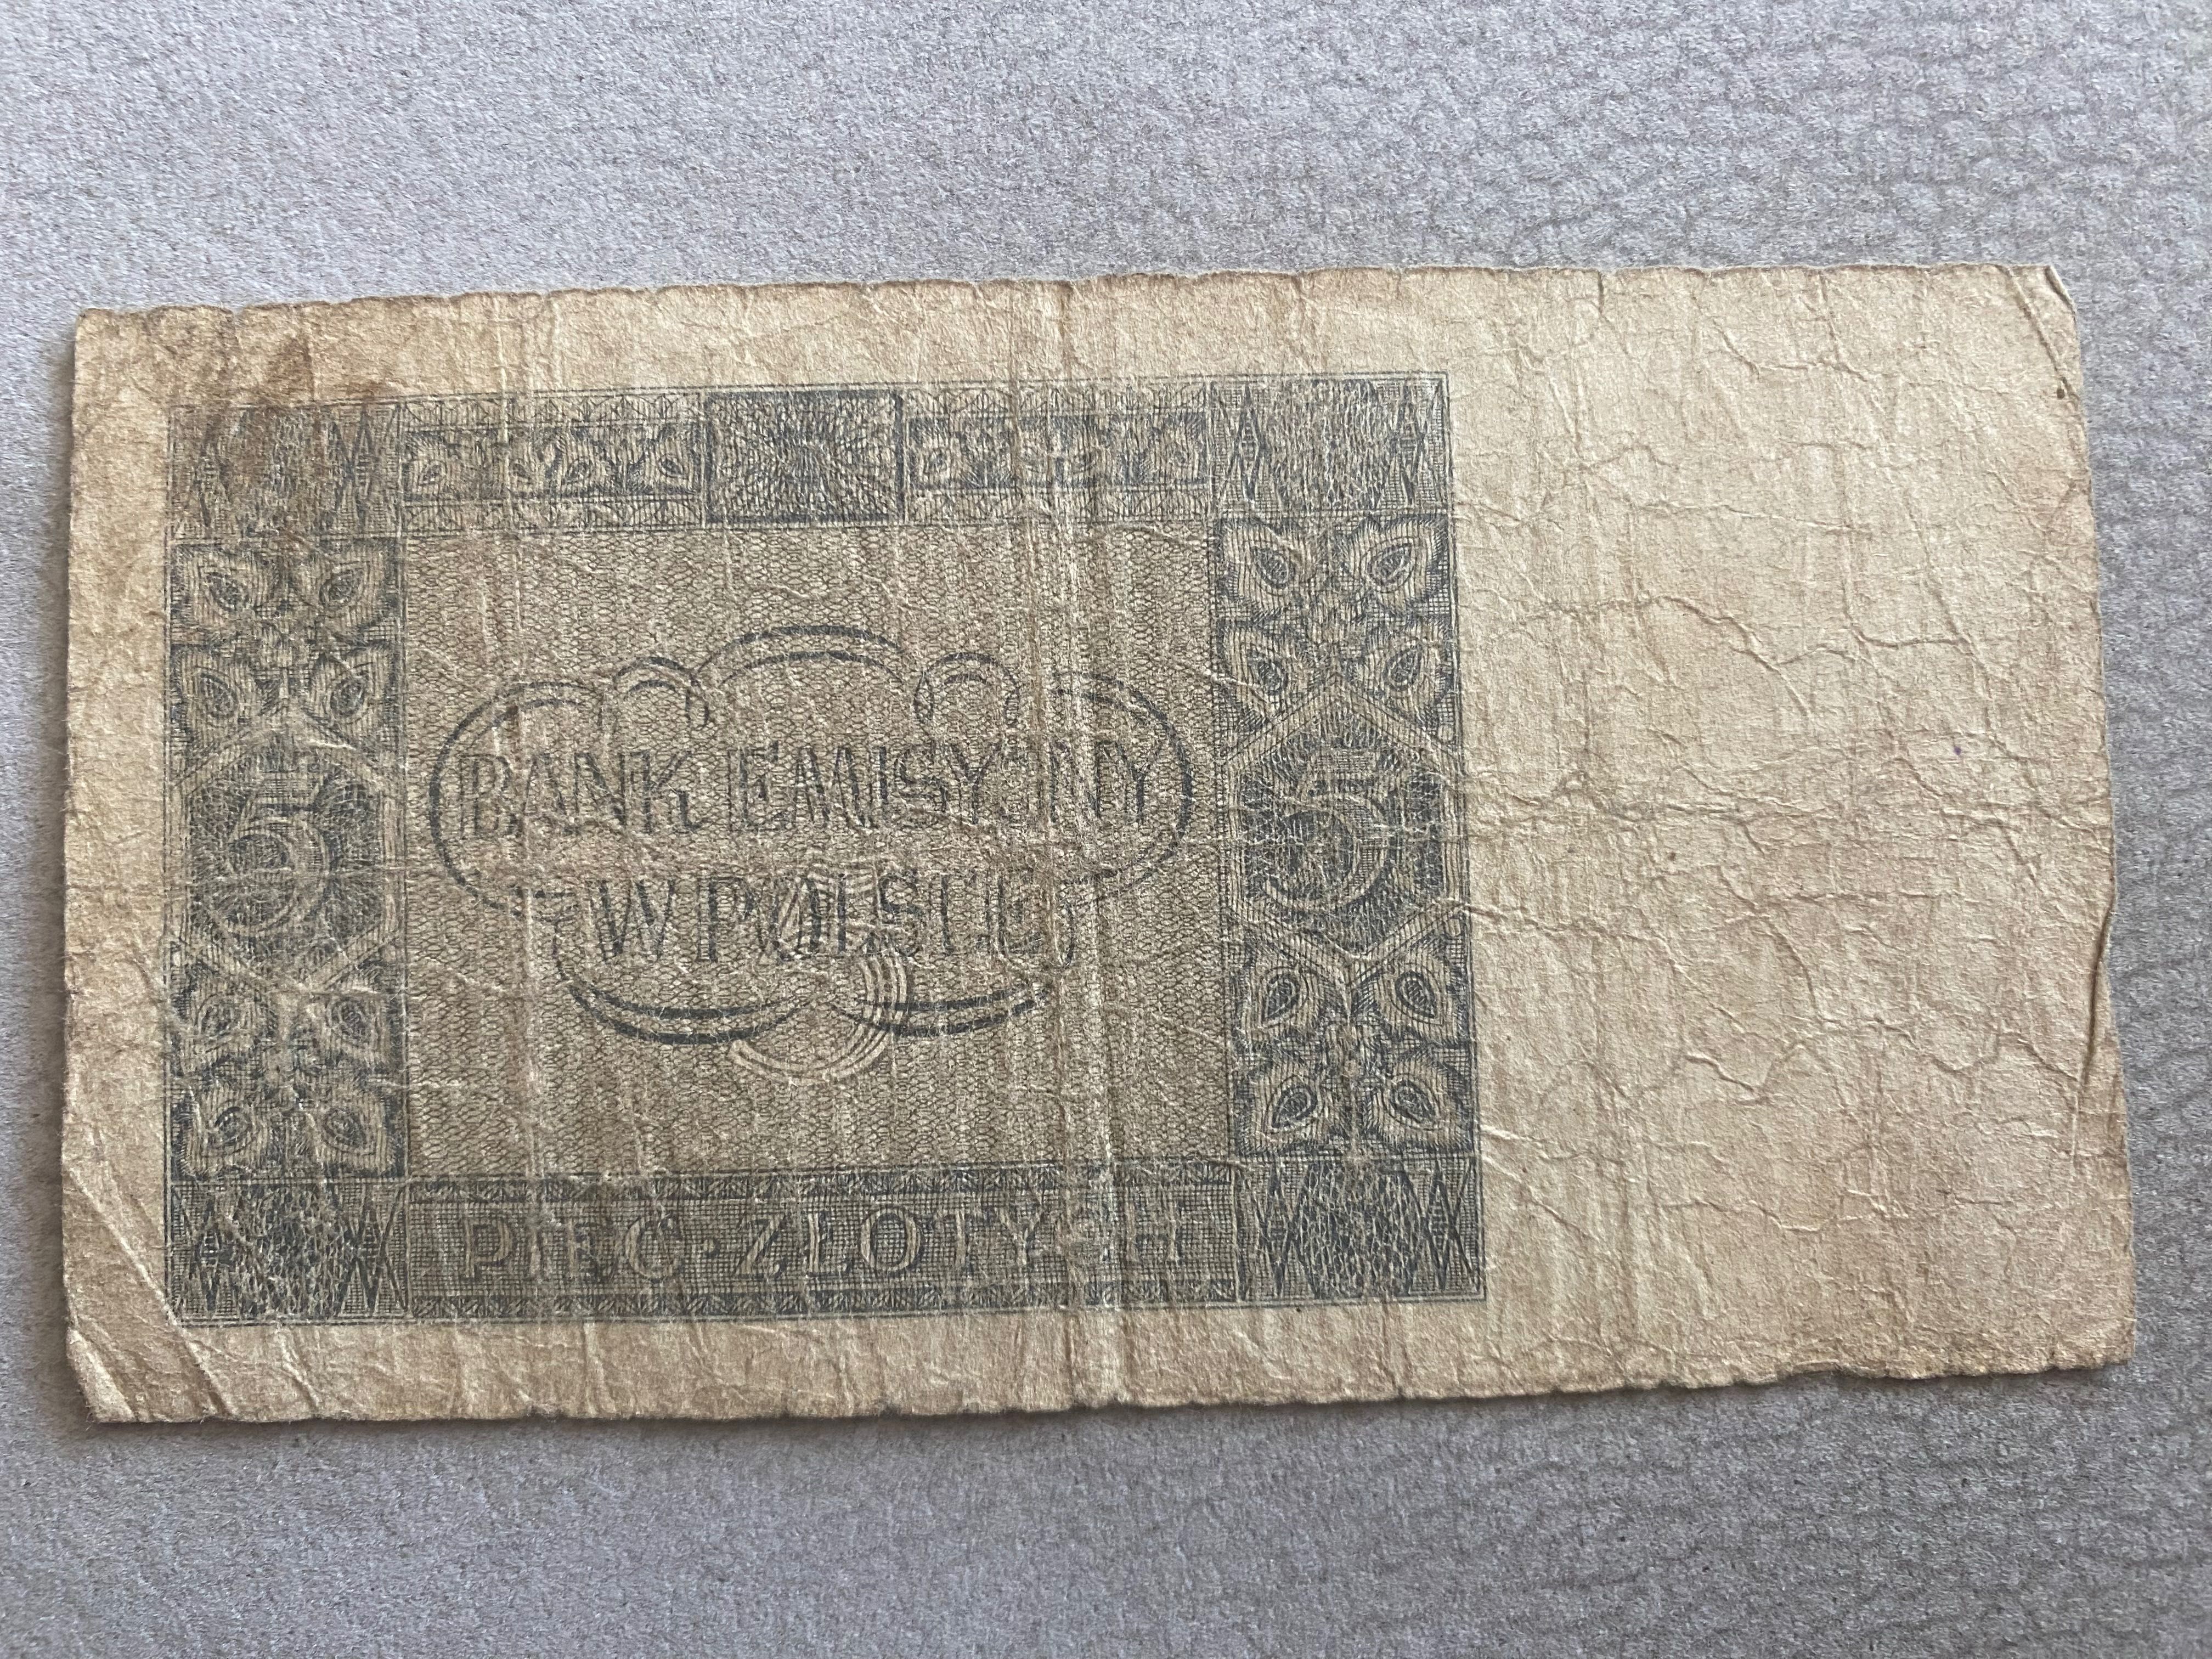 Banknot 5zł z 1941 roku